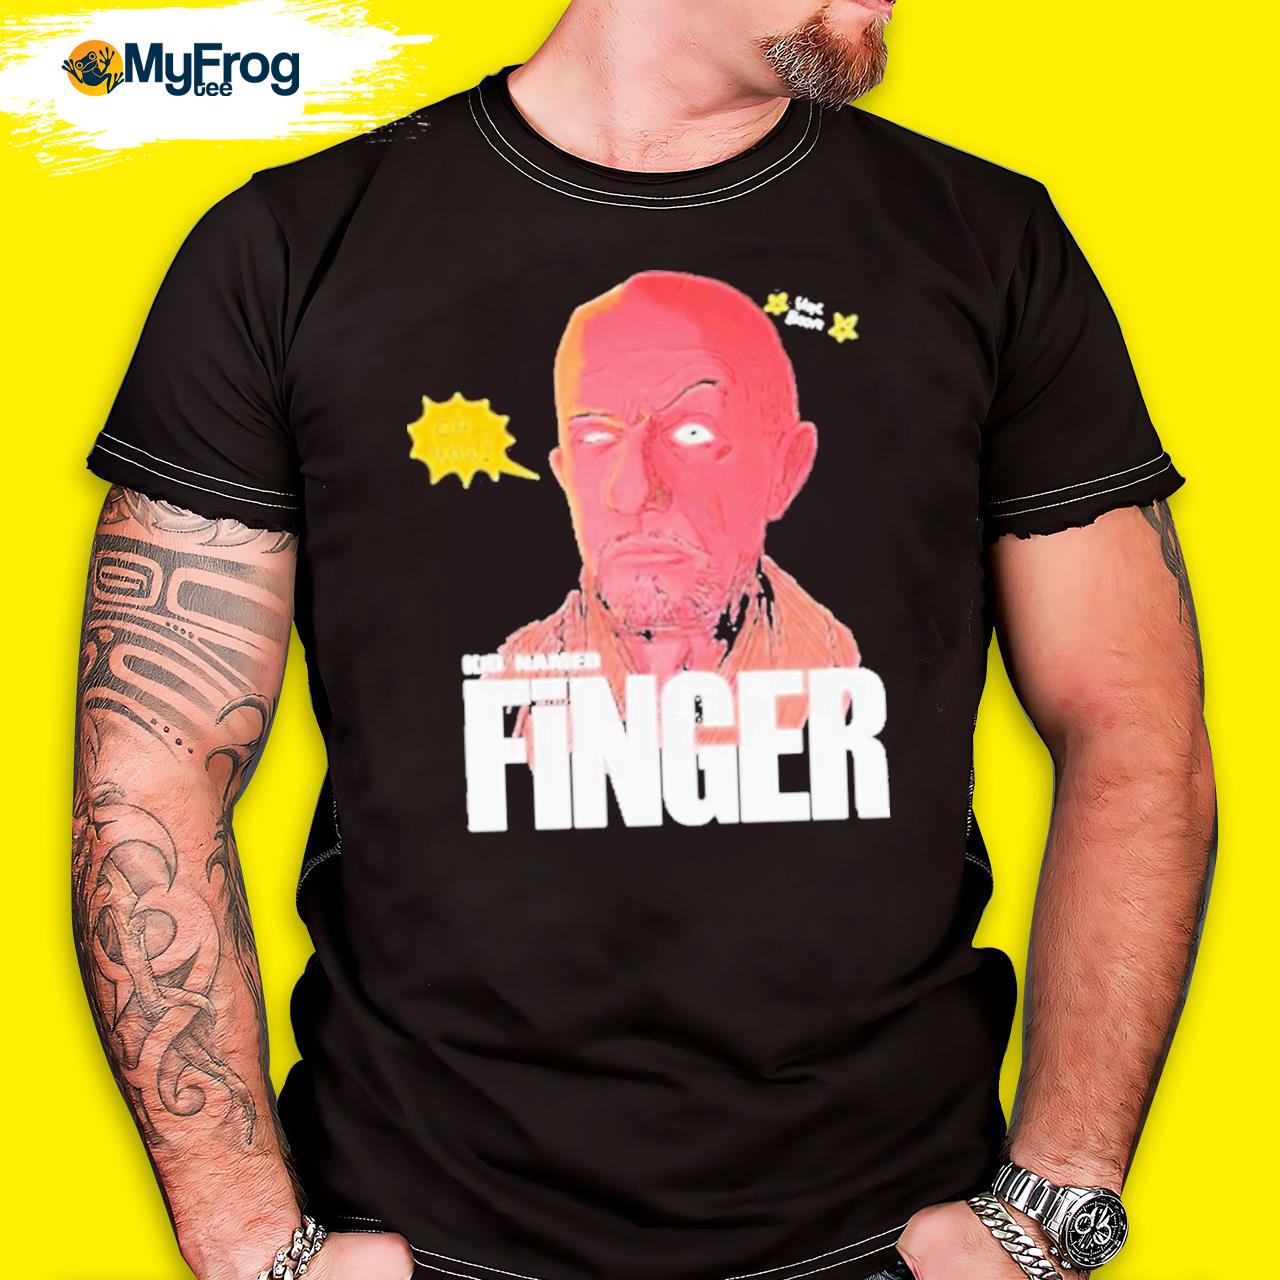 Kid named finger shirt